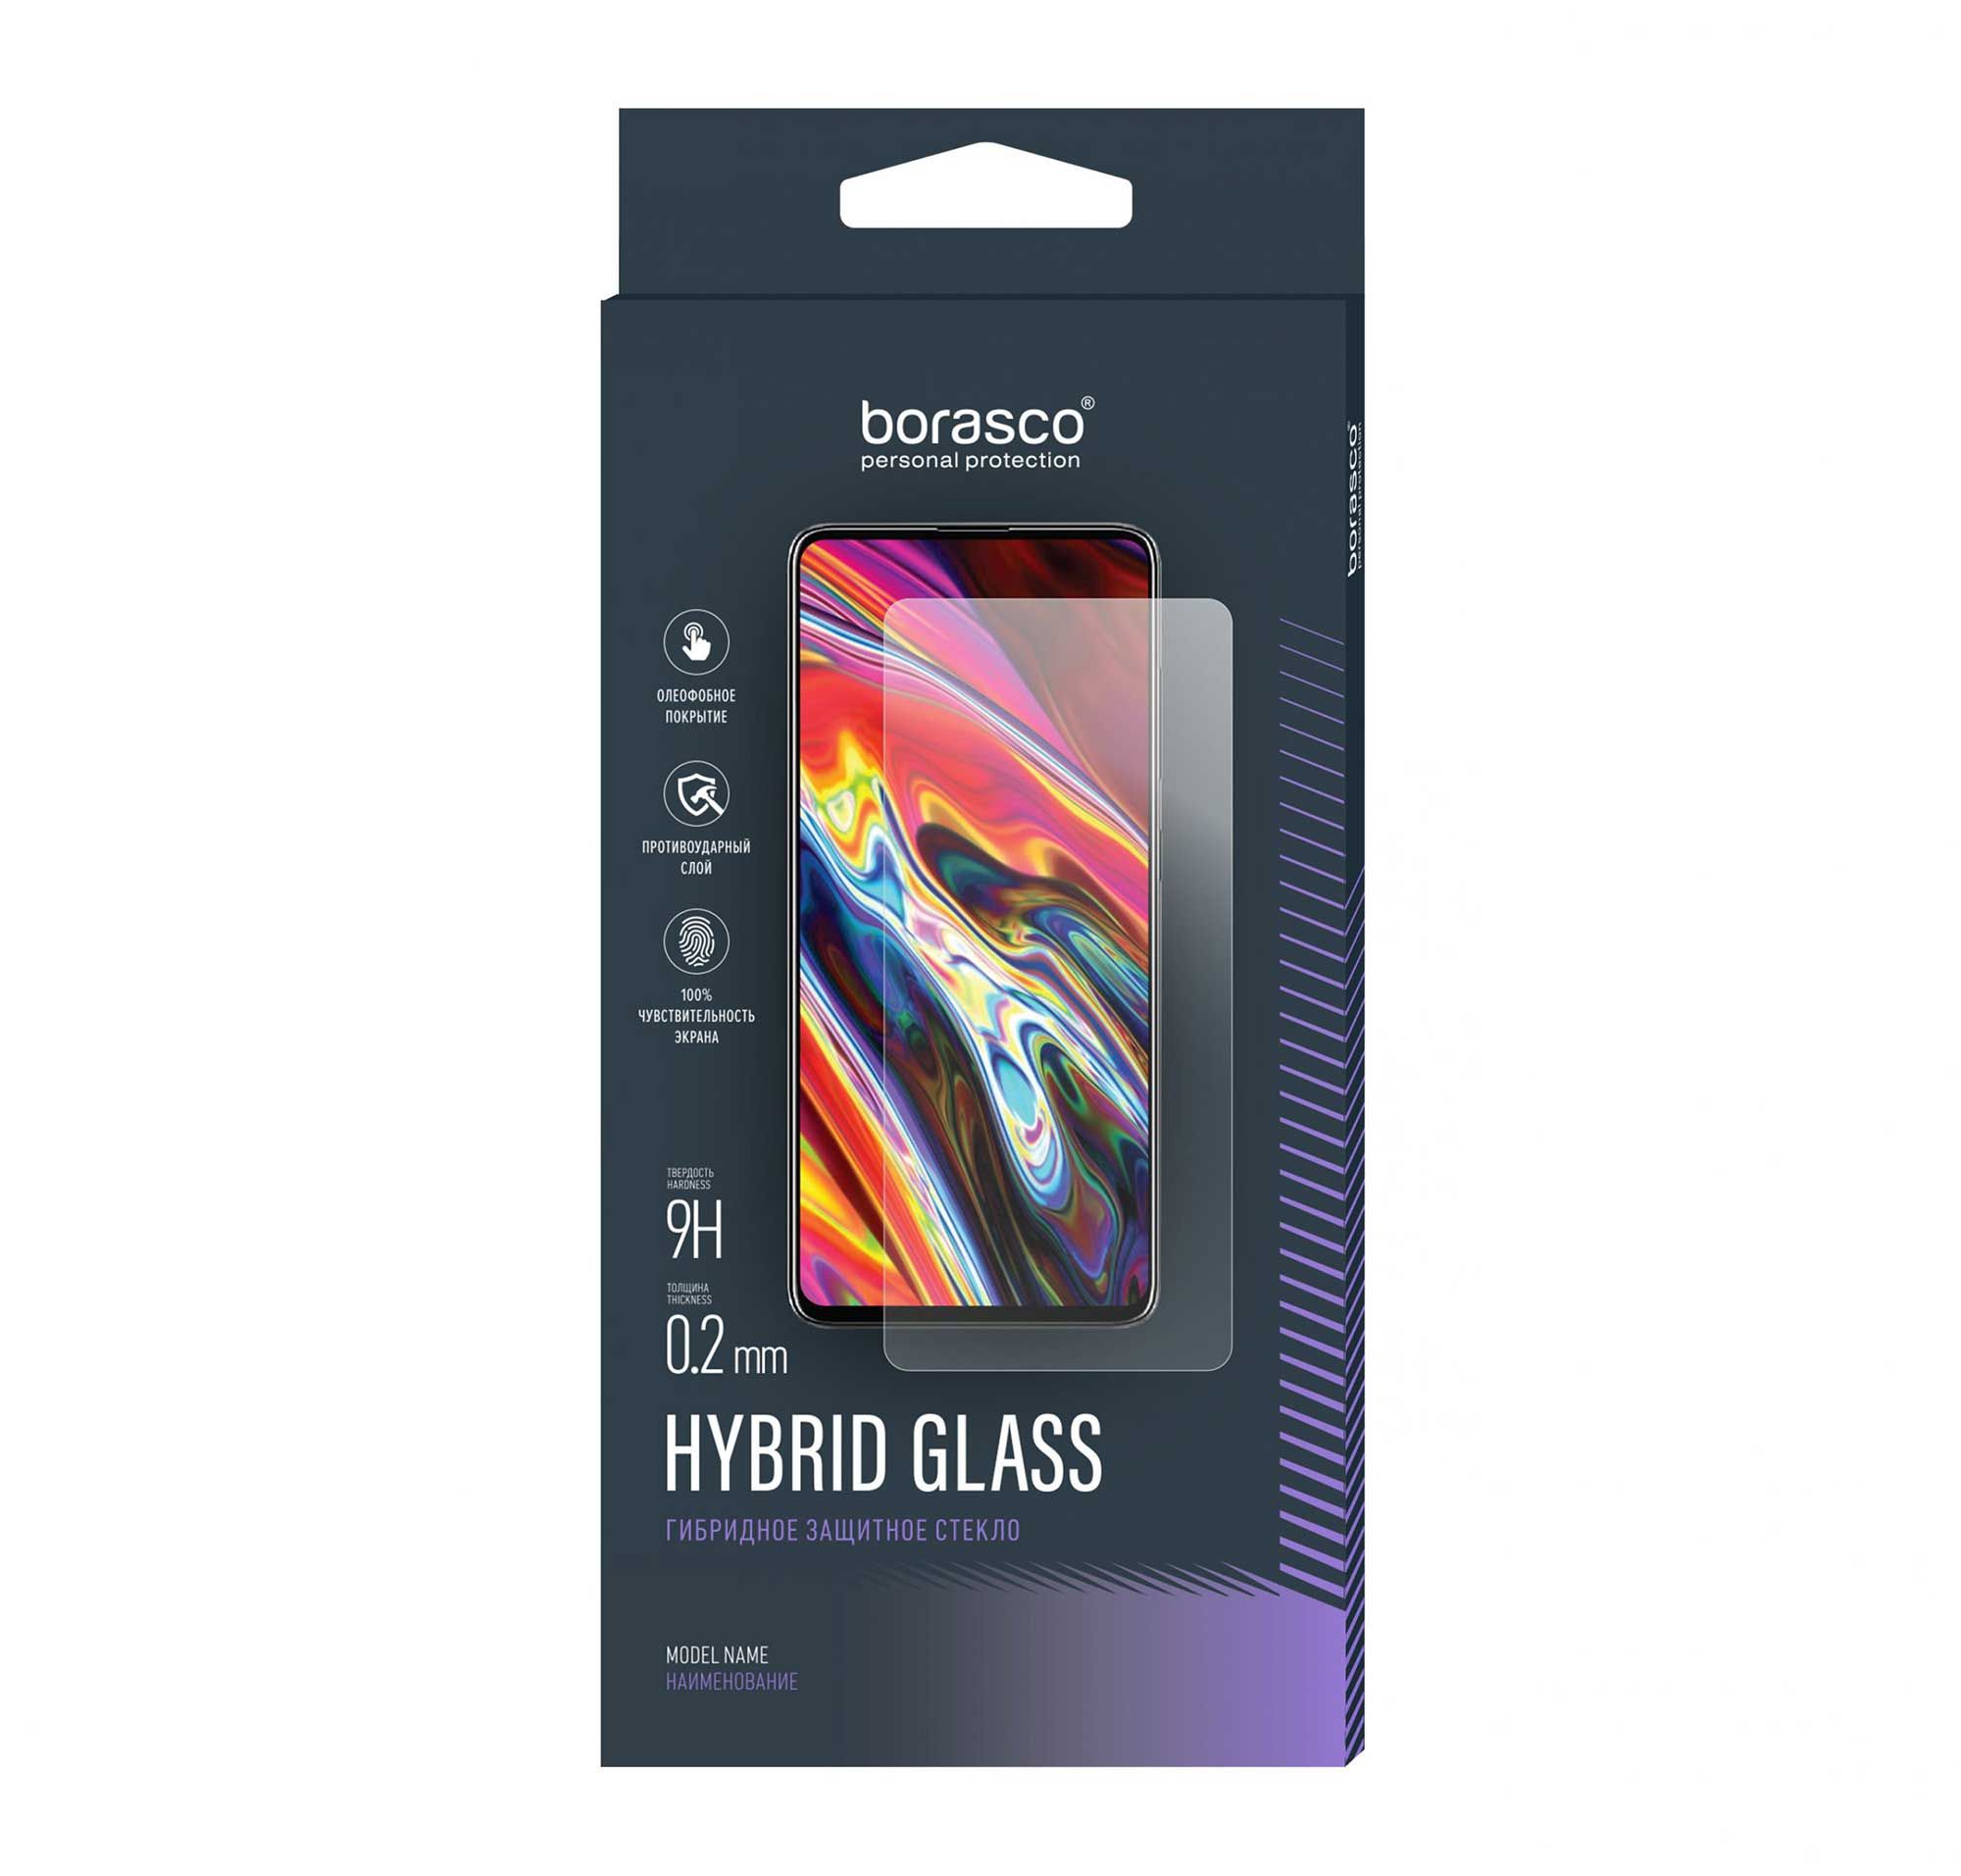 Защитное стекло Hybrid Glass для Asus Zenfone 8 Flip закаленное стекло для asus zenfone max m1 m2 zb602kl zb601kl zb631kl zb633kl защитное стекло для asus zb555kl zb570tl za550kl пленка